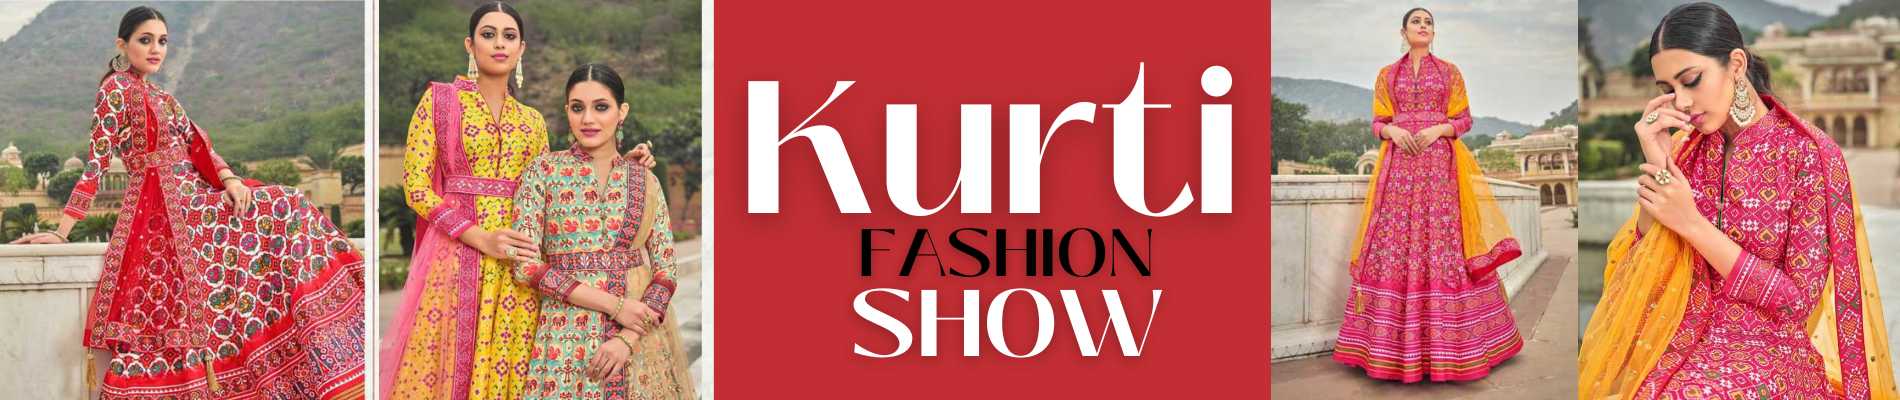 Kurti fashion show-compressed